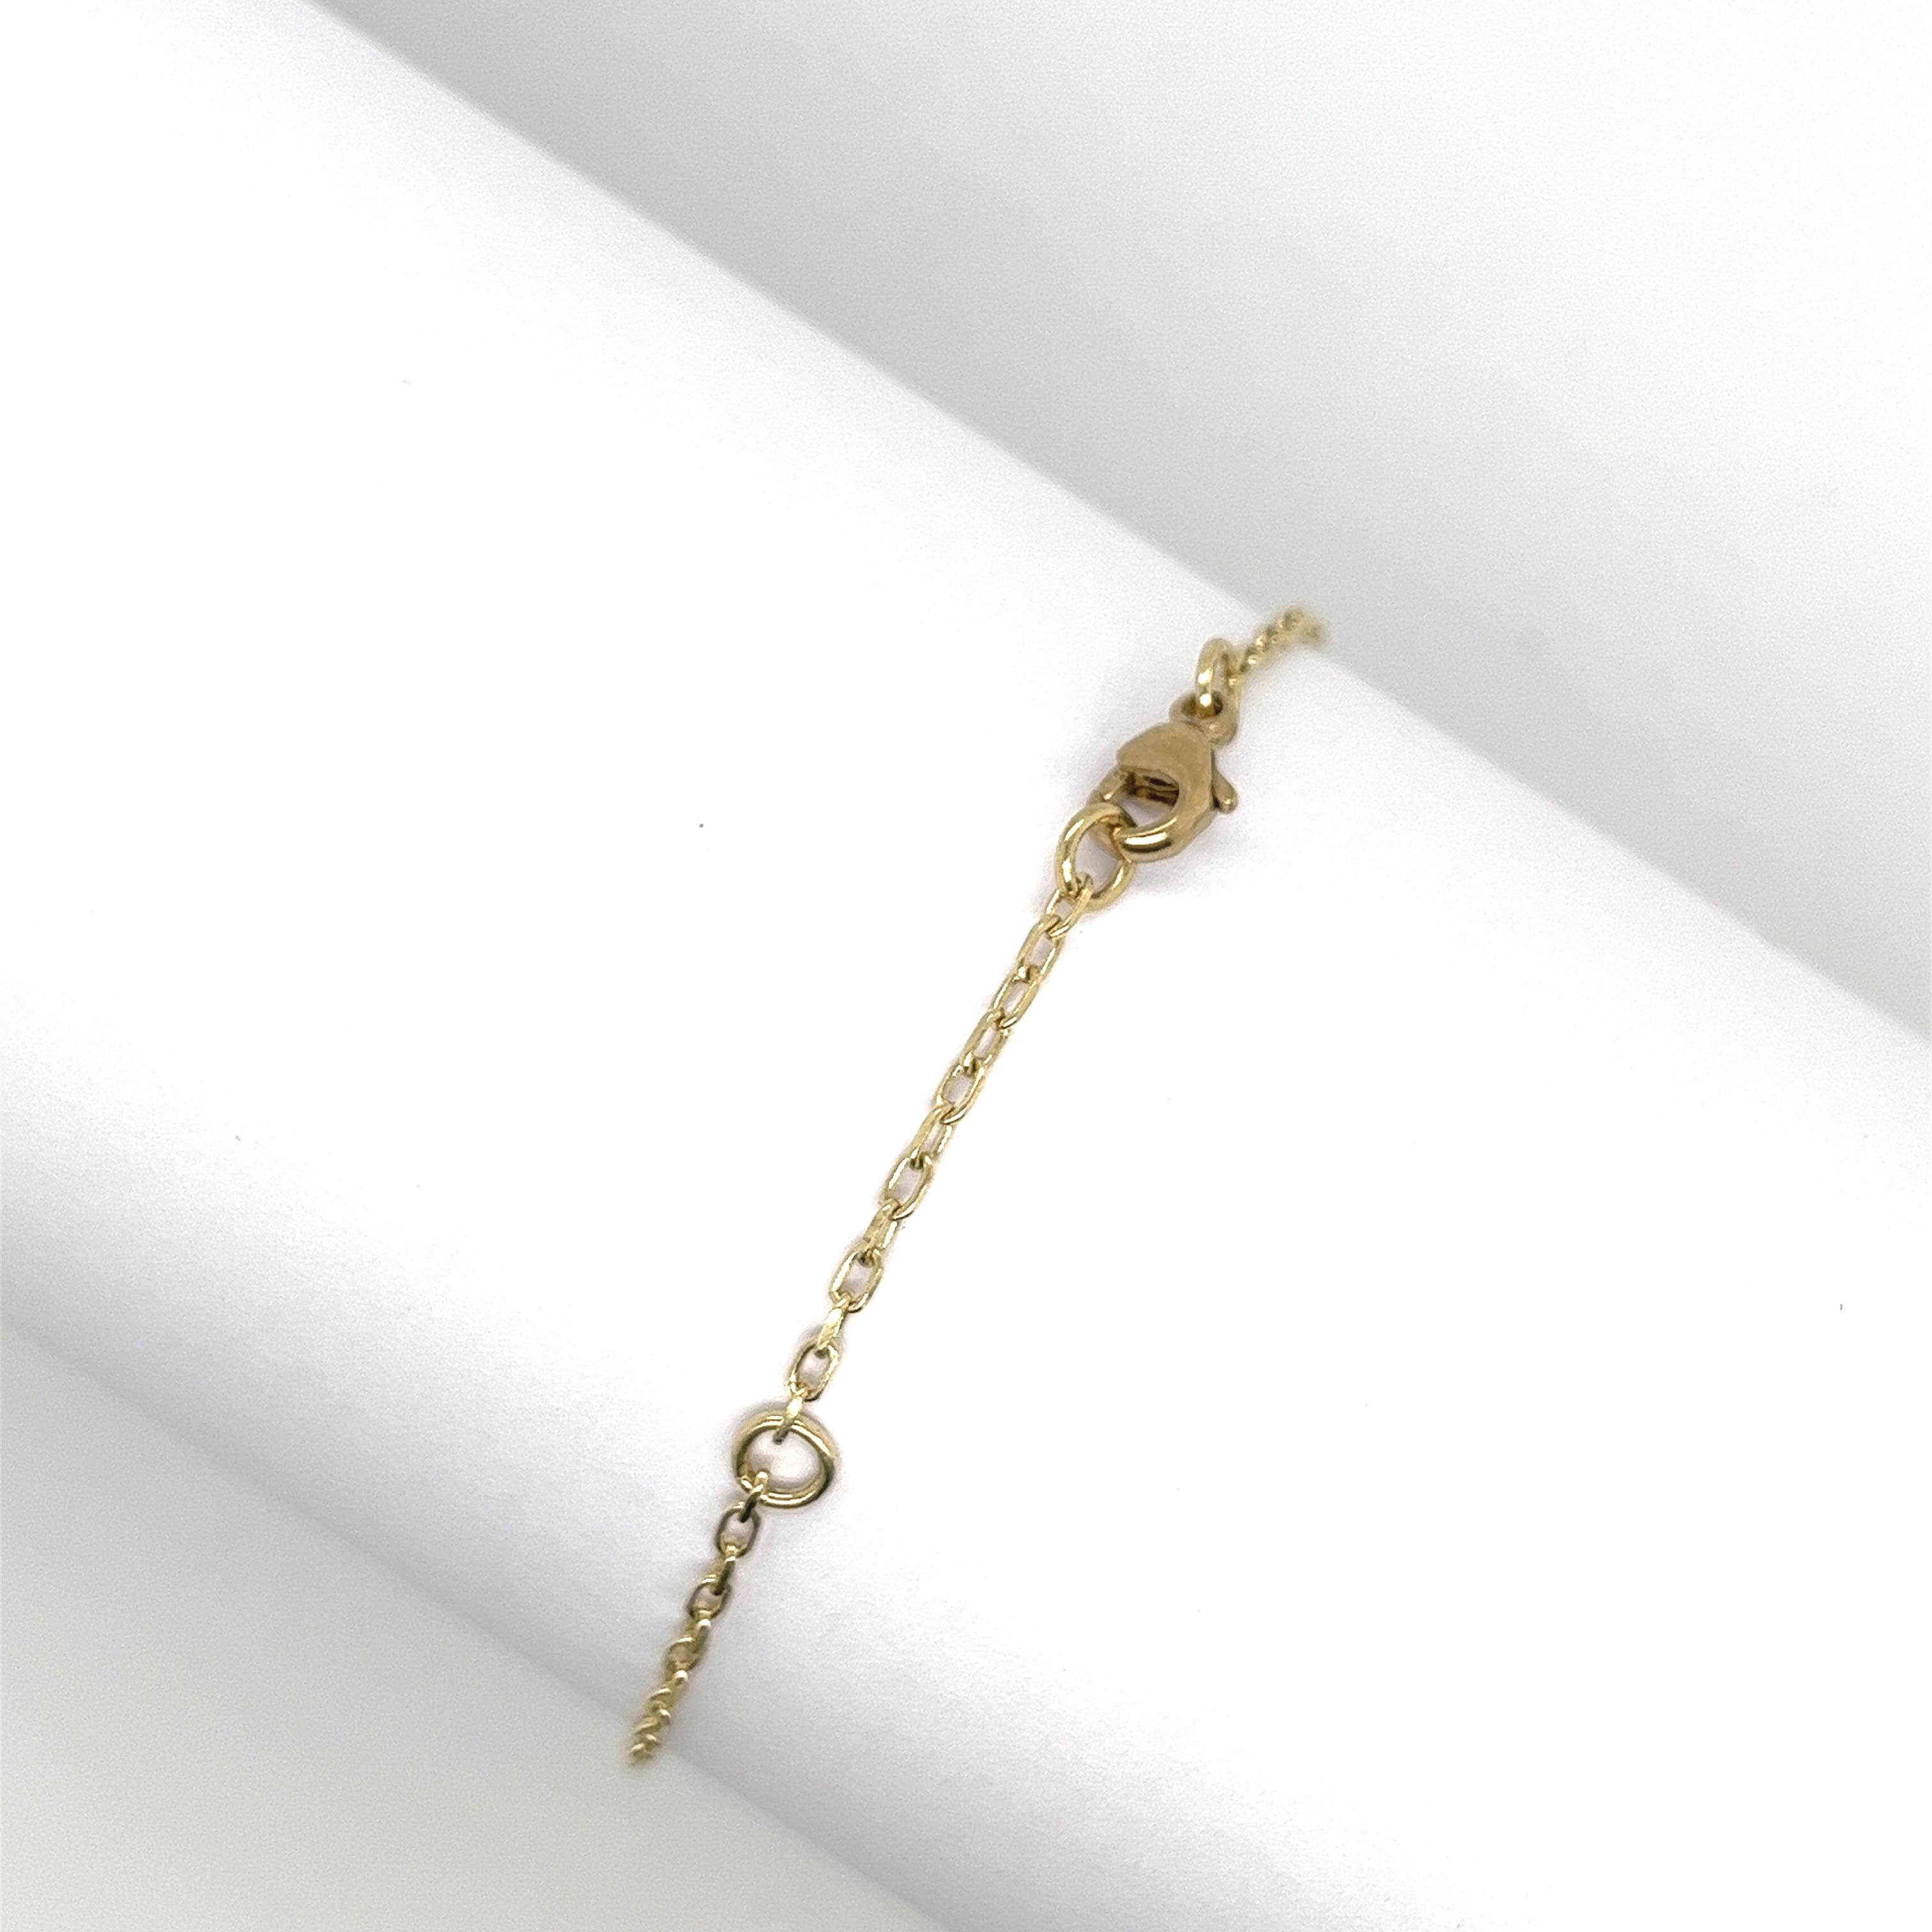 
Made by Jewellery Cave - unser exquisites Armband mit 0,08 Karat Diamanten und runden Perlen als böses Auge -
eine bezaubernde Verschmelzung von Stil und Symbolik. 
Das Herzstück dieses faszinierenden Armbands aus 9 Karat Gelbgold ist der